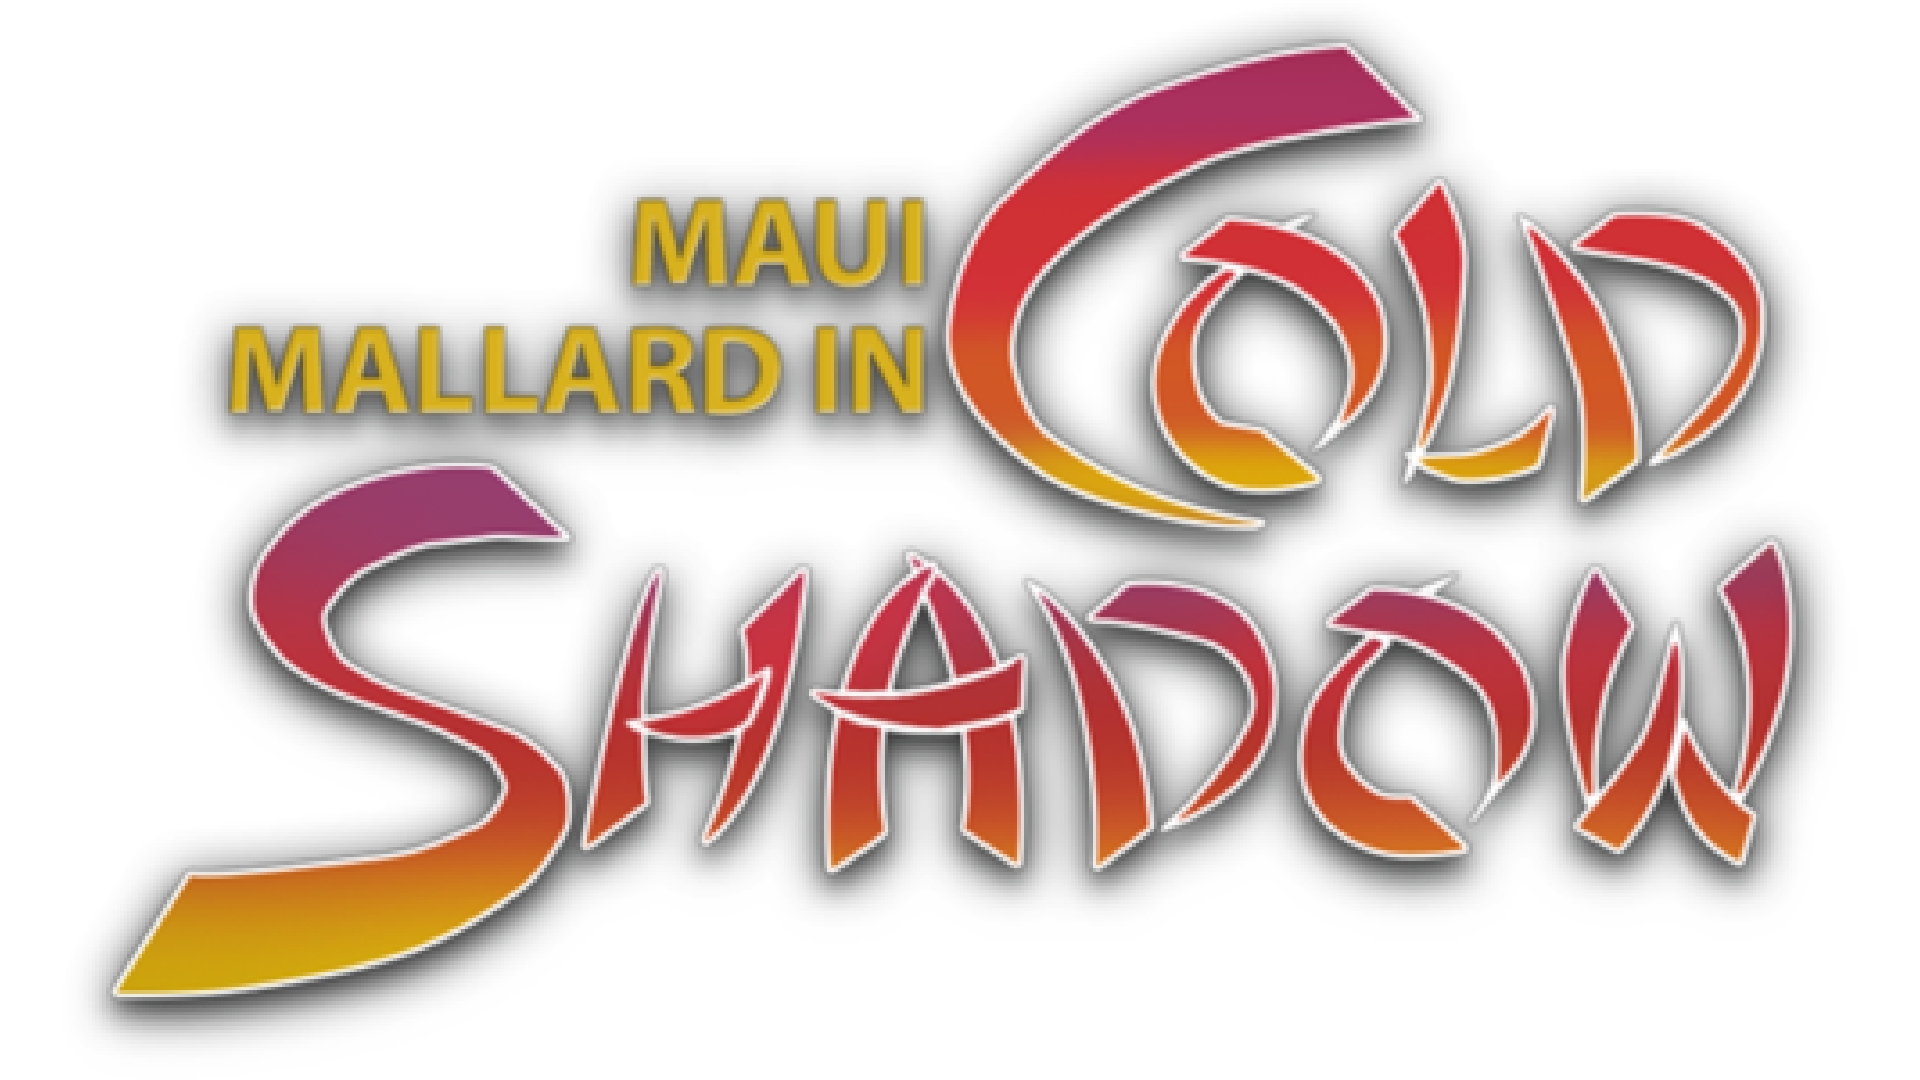 Текст холод шадоу. Donald in Maui Mallard (Cold Shadow). Мауи Маллард. Donald in Maui Mallard Sega. Maui Mallard Art.